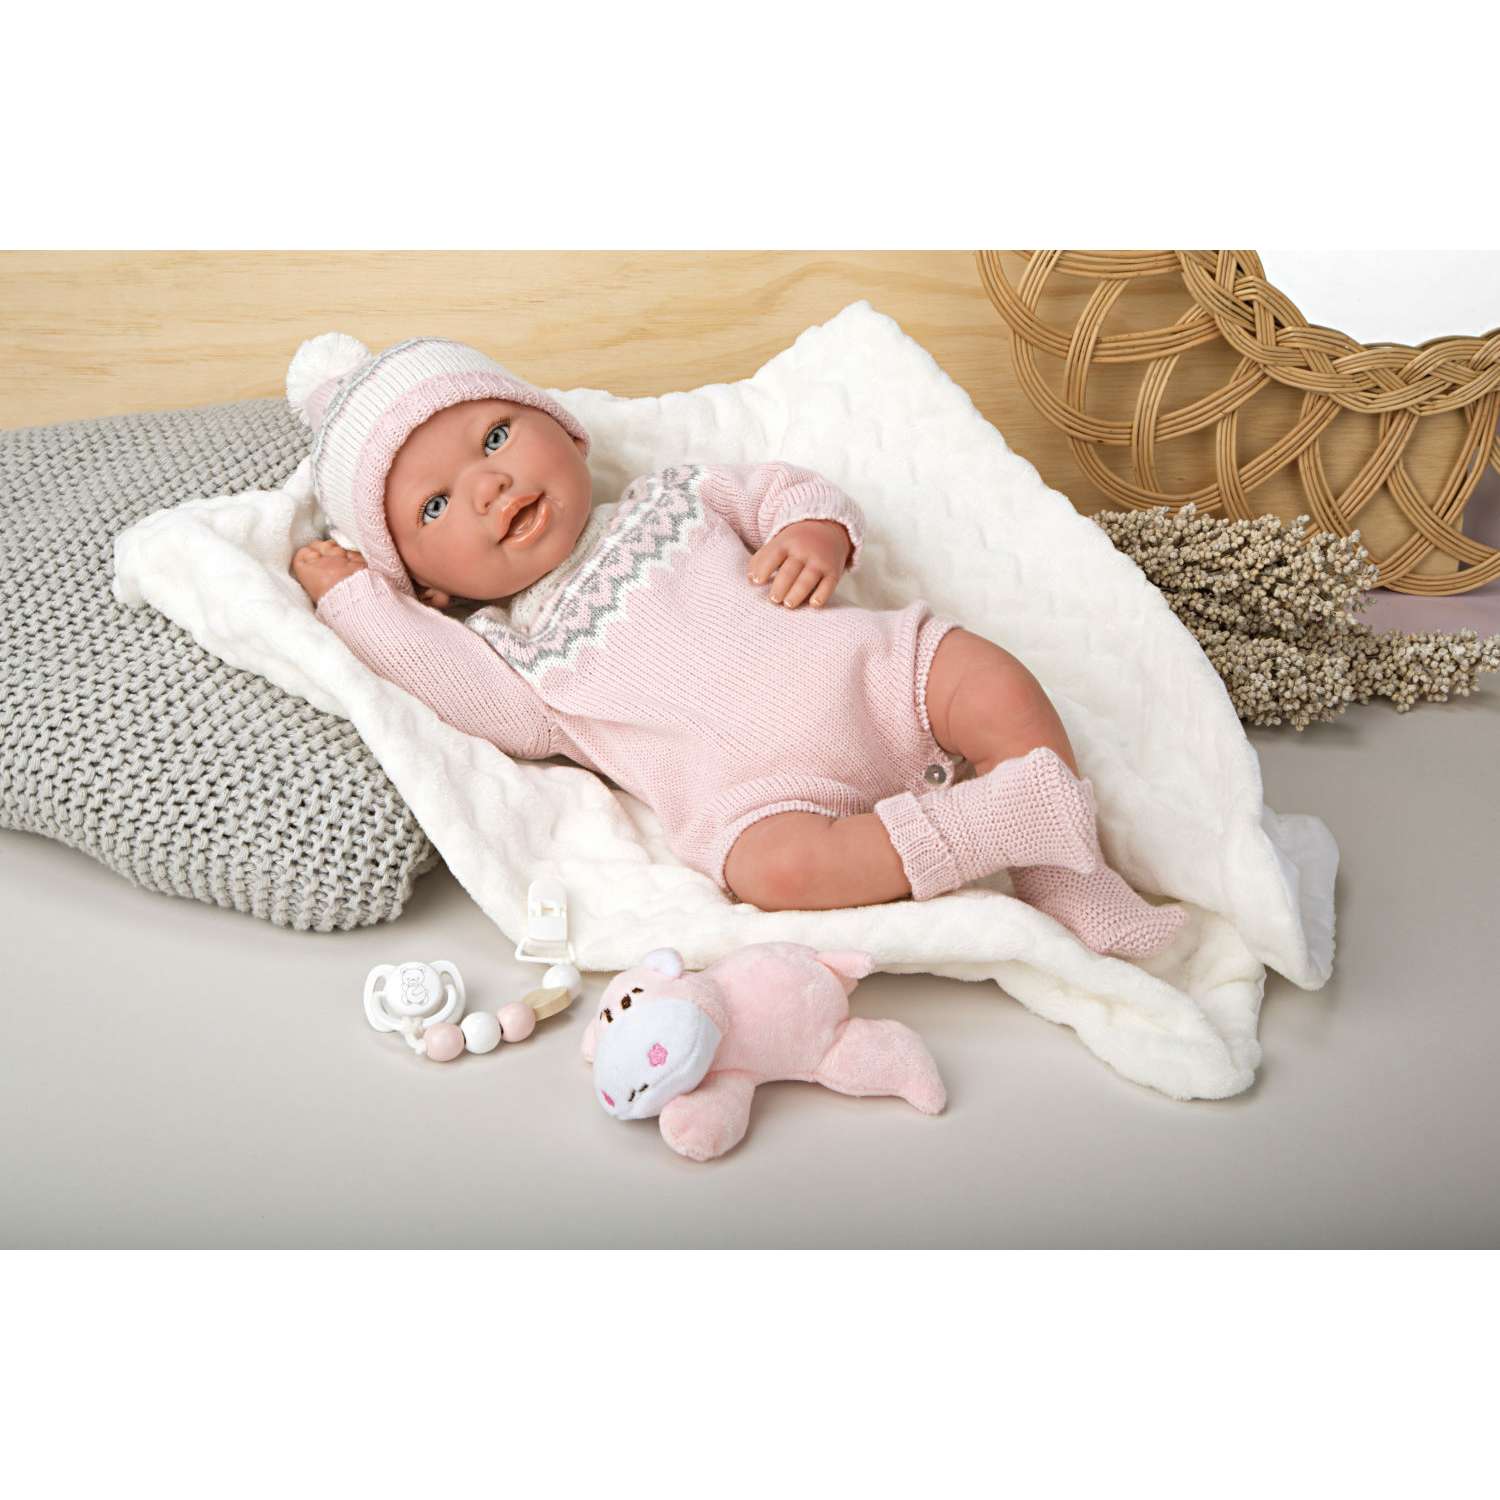 Кукла пупс Arias Anais мягкий новорожденный в розовой одежде с соской 45 см реборн Т24491 - фото 1